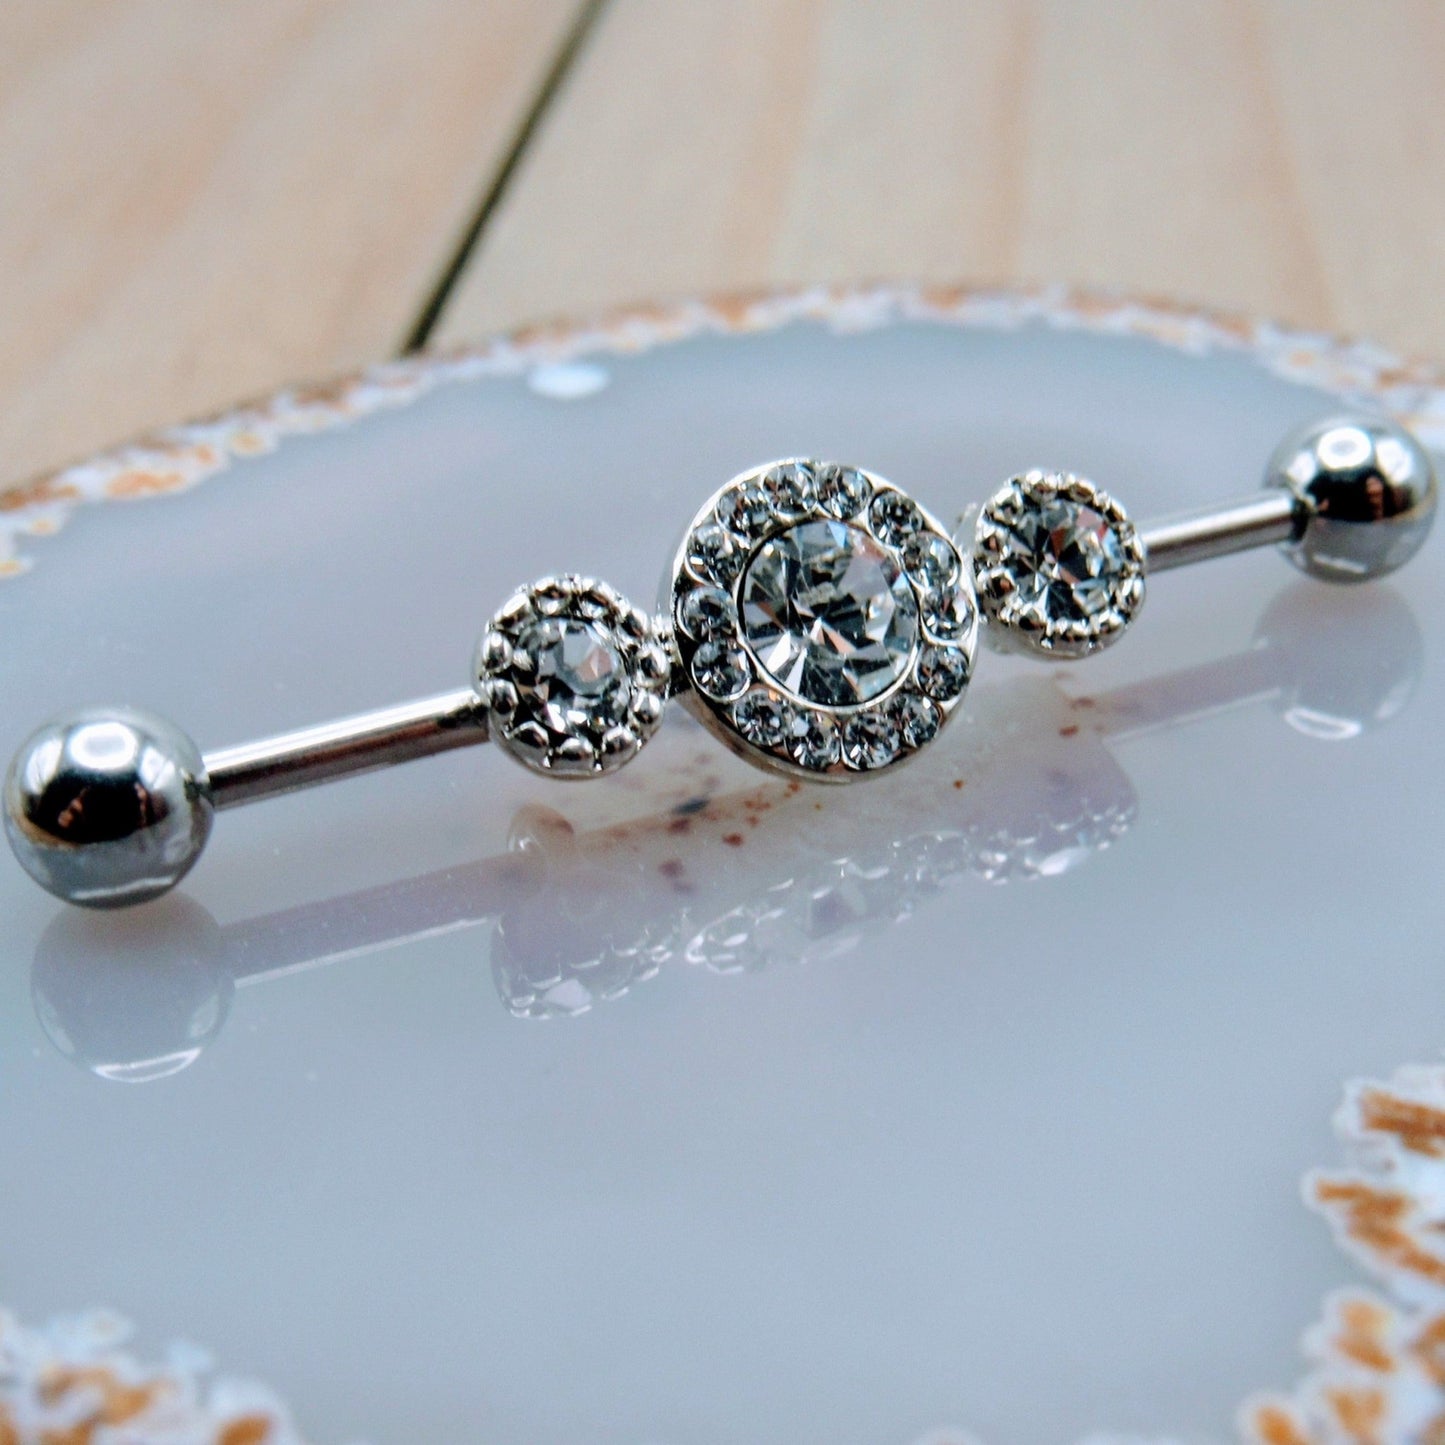 14g Triple CZ gemstone industrial piercing barbell 1 1/4" clear gem scaffold jewelry 316L stainless steel straight bar earring - Siren Body Jewelry